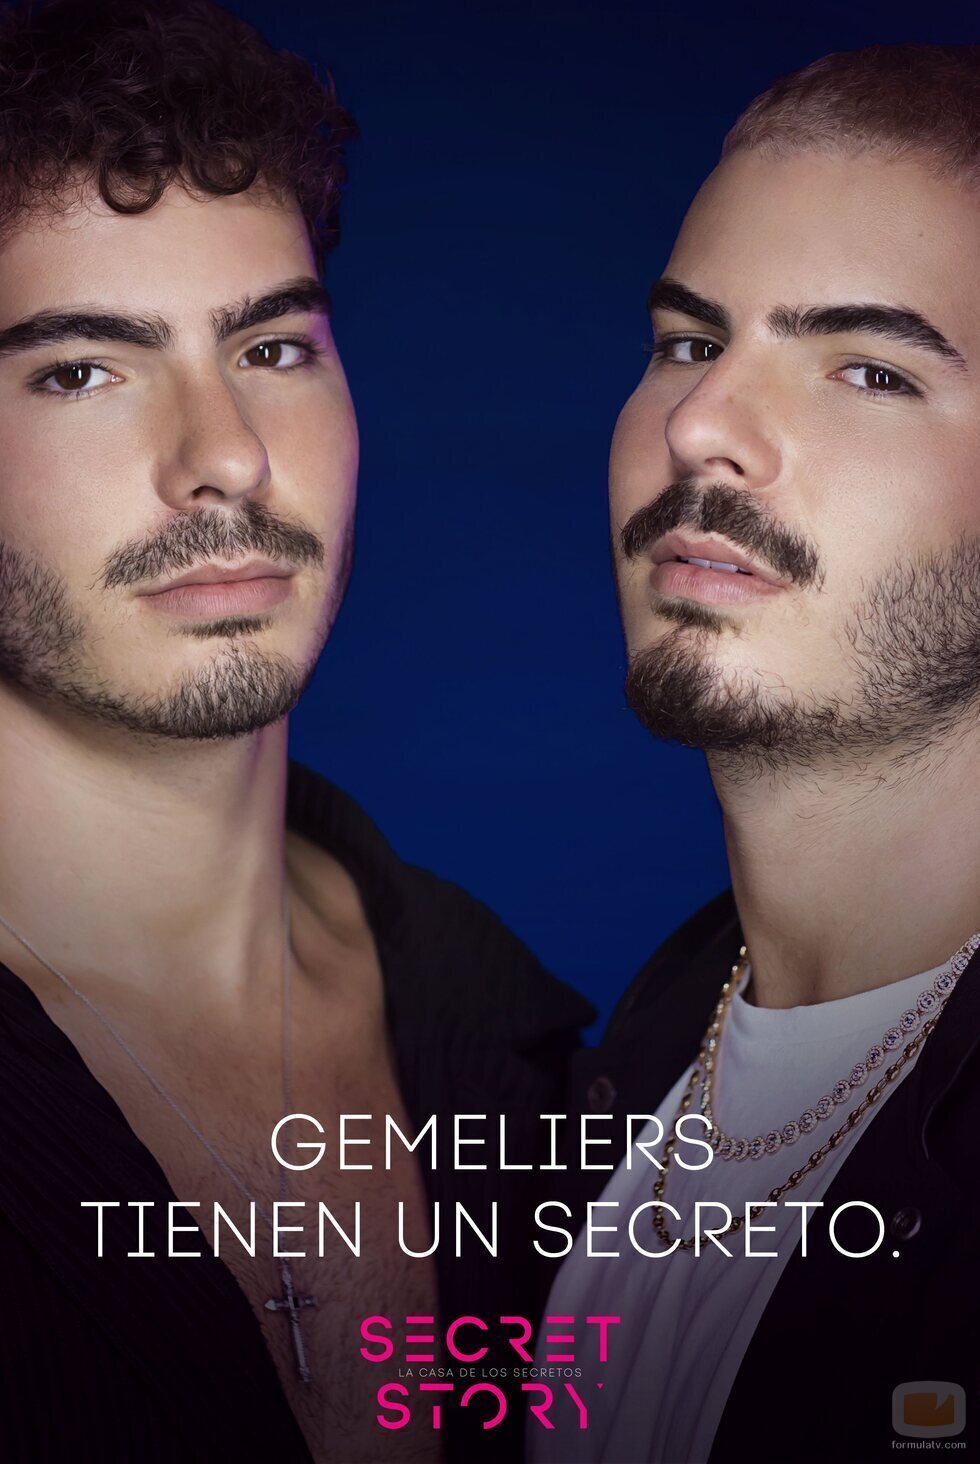 Los Gemeliers, concursantes de la primera edición de 'Secret Story'